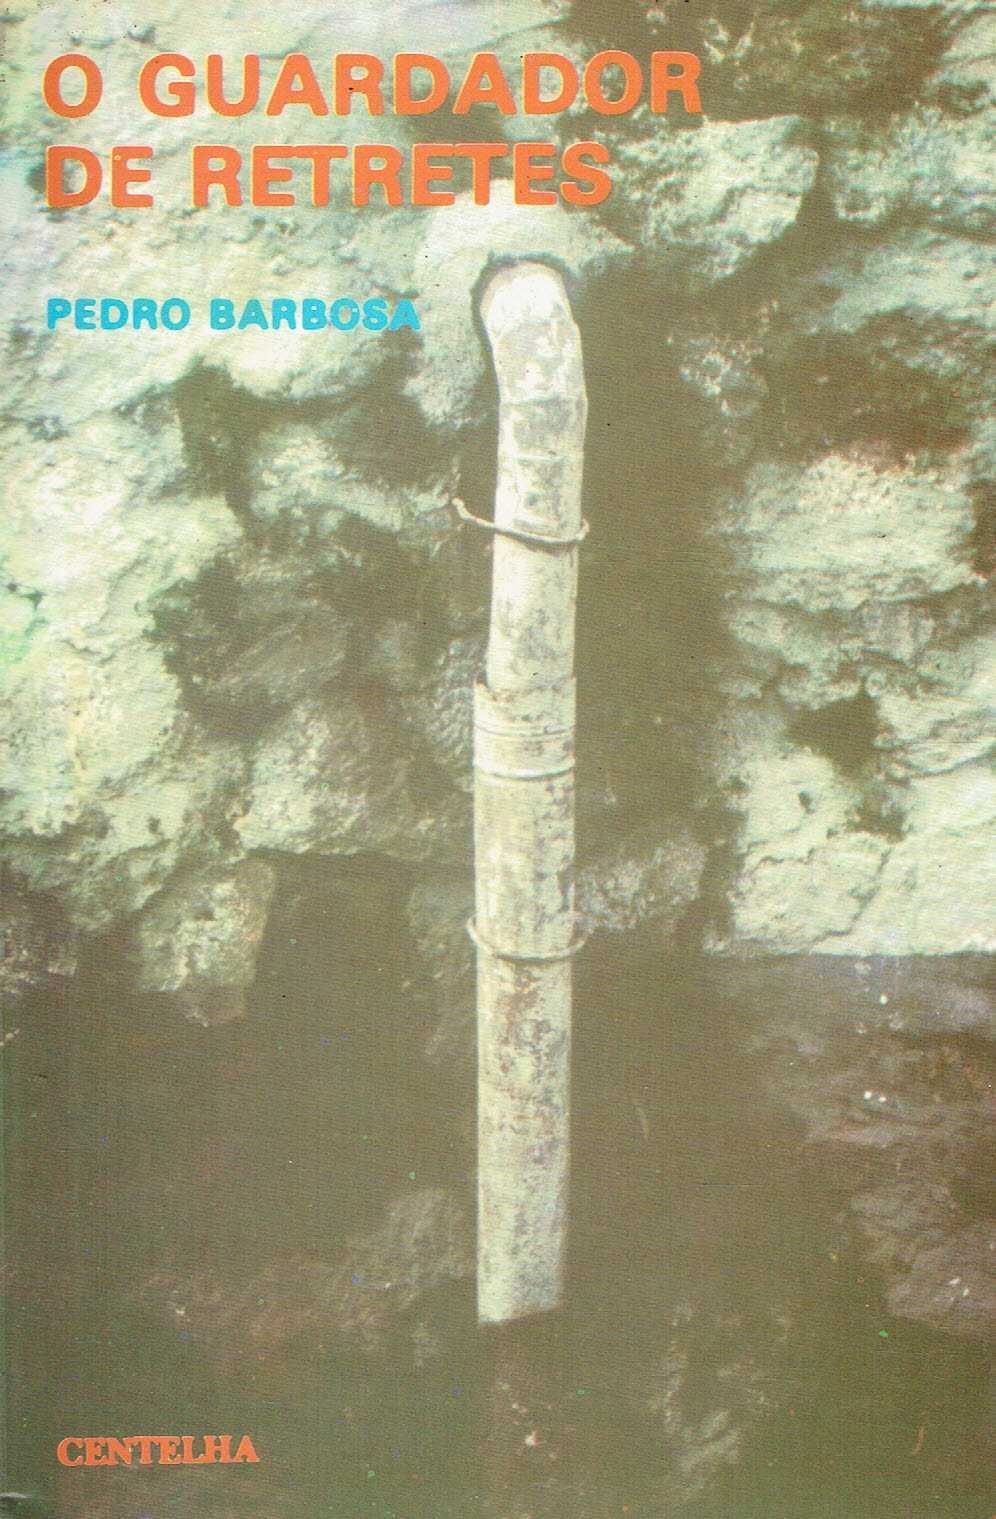 15436

O Guardador de Retretes
Pedro Barbosa